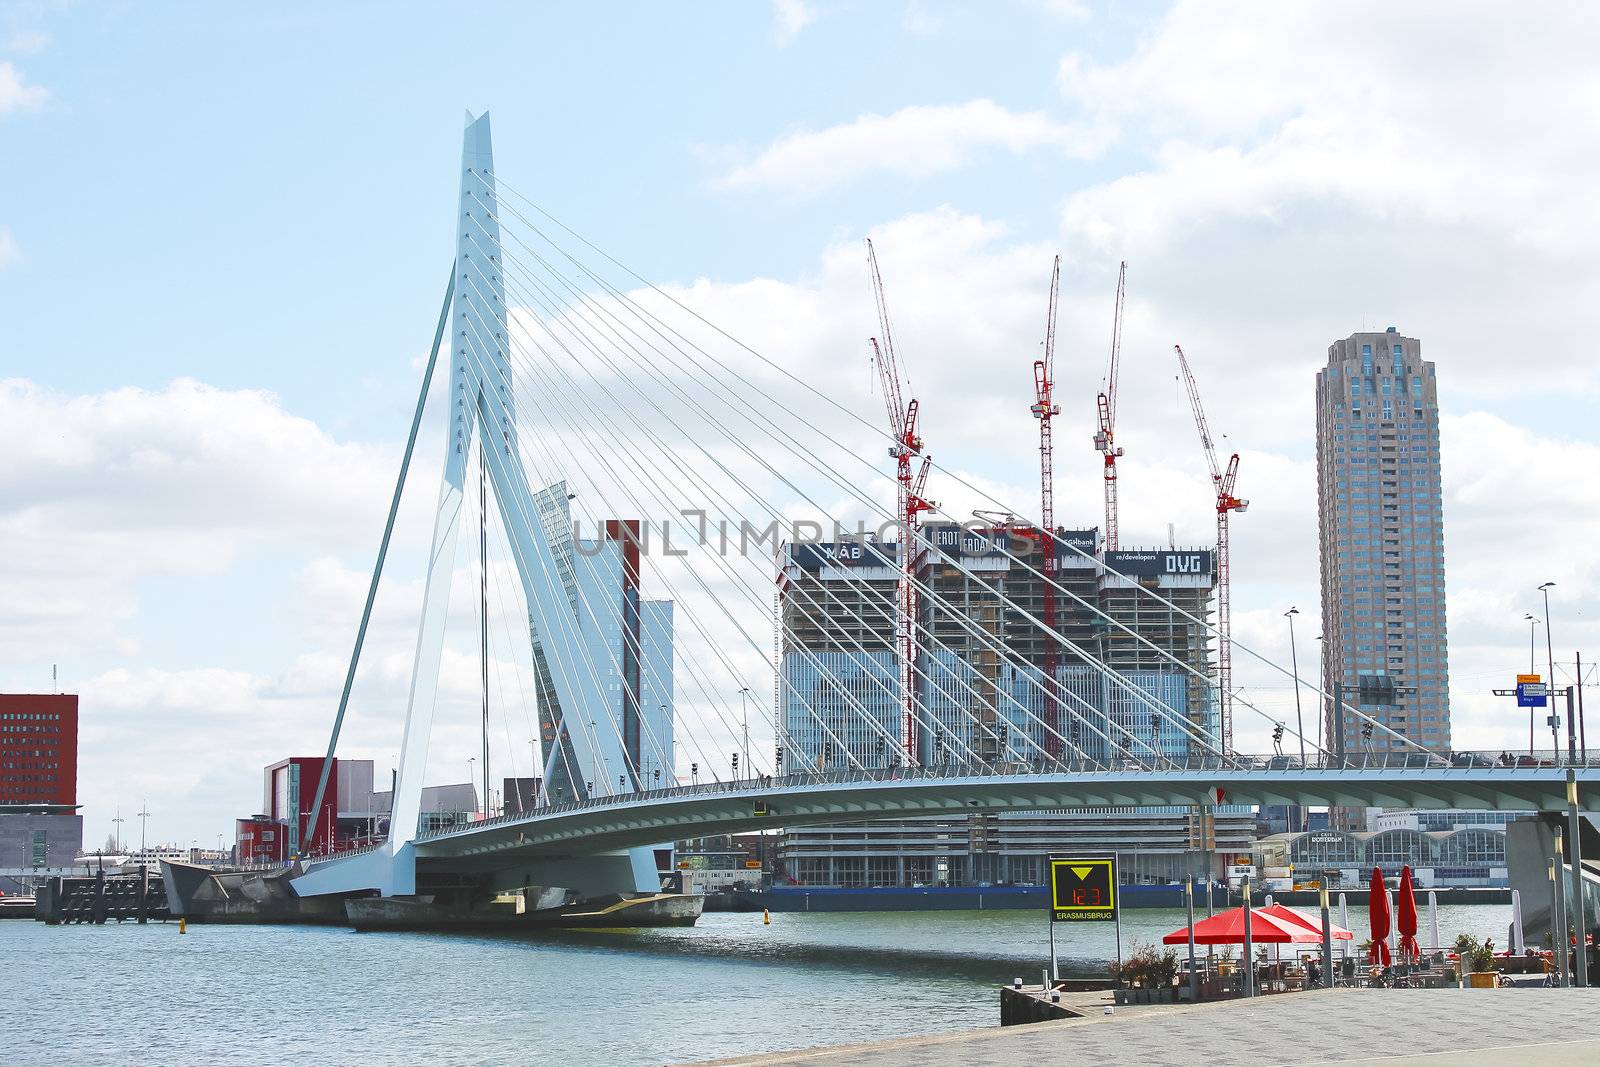 Erasmus Bridge in Rotterdam. Netherlands by NickNick